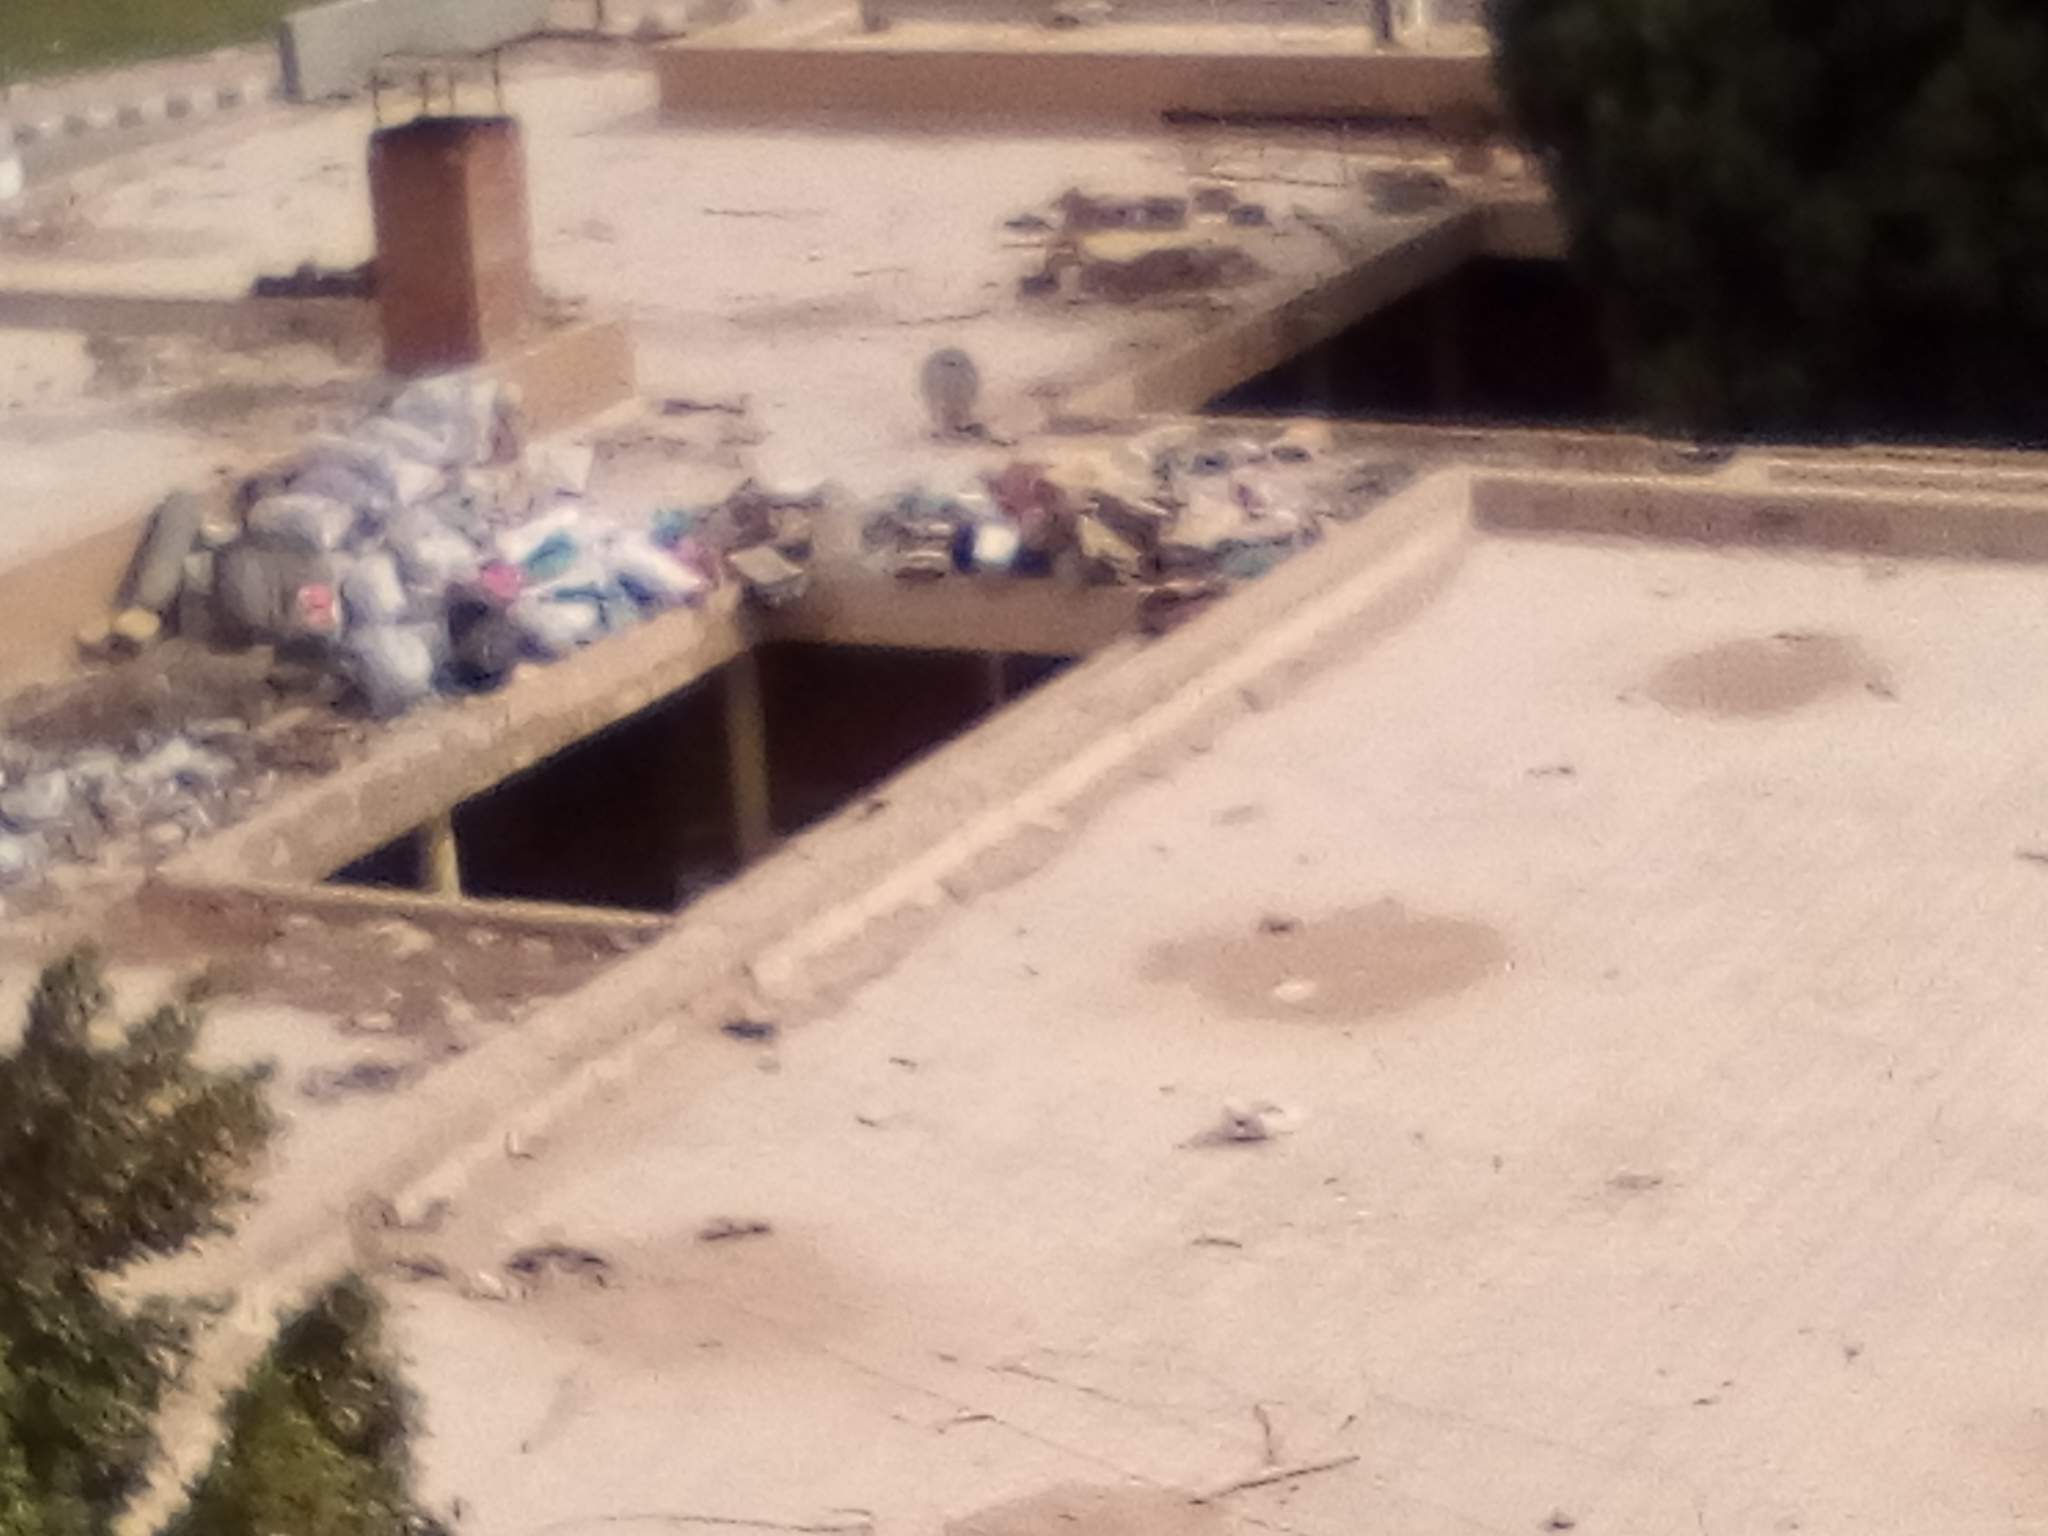 انتشار القمامة ومخلفات الورش والمحلات بالمجاورة 6 بالعاشر من رمضان (8)